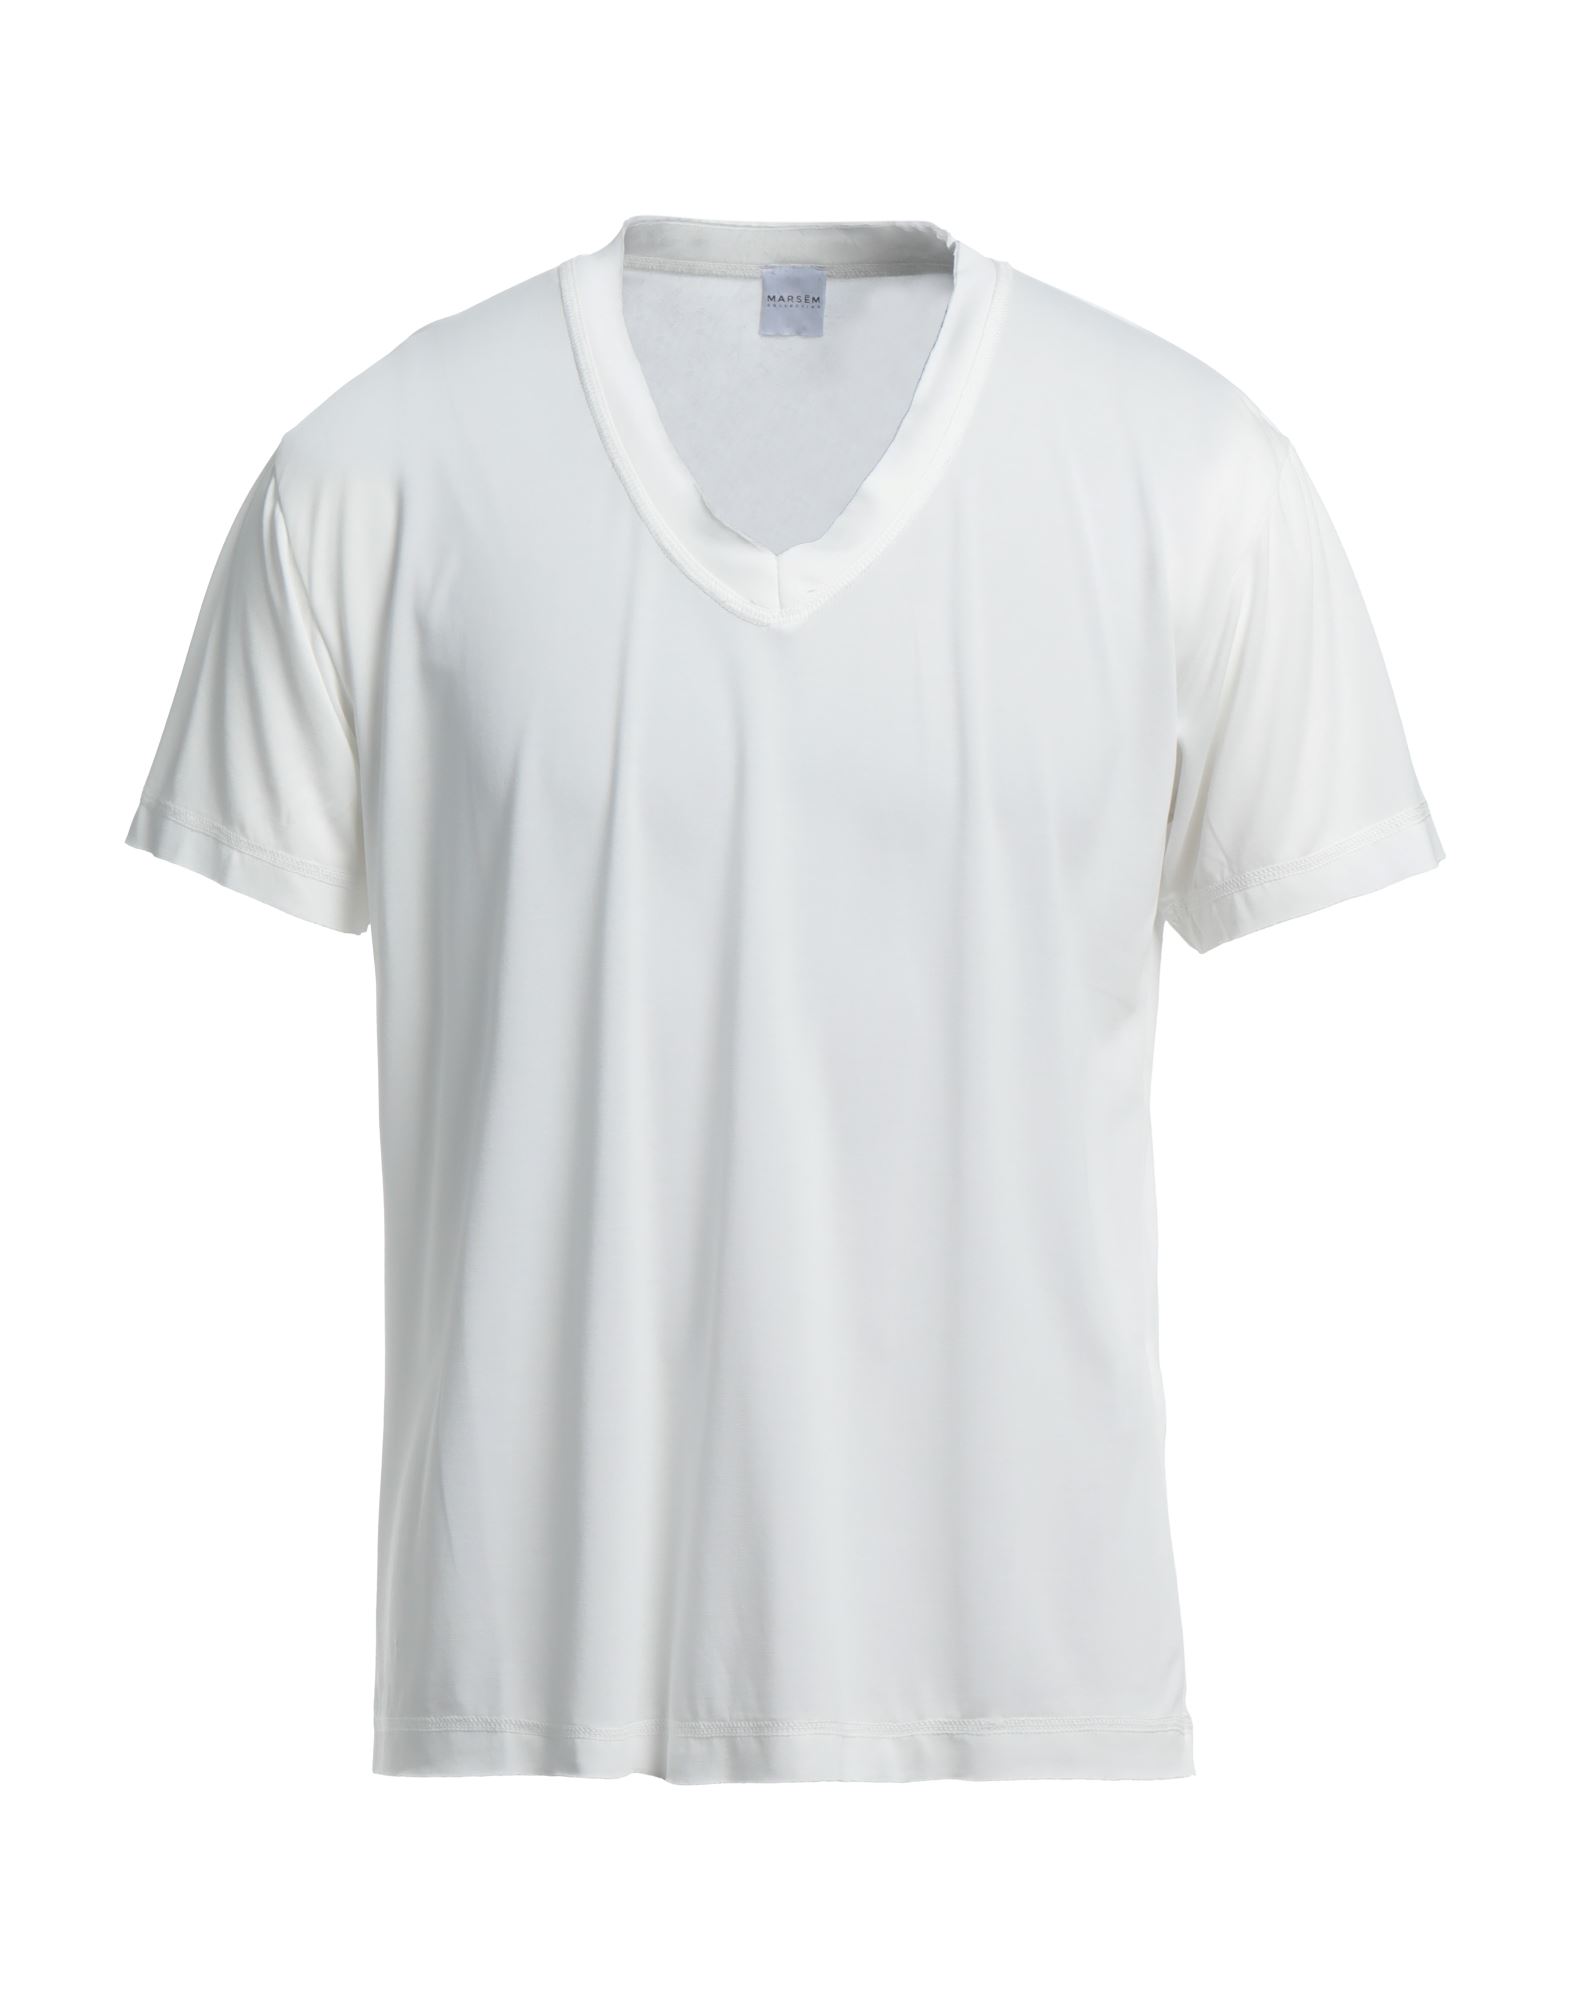 Marsēm T-shirts In White